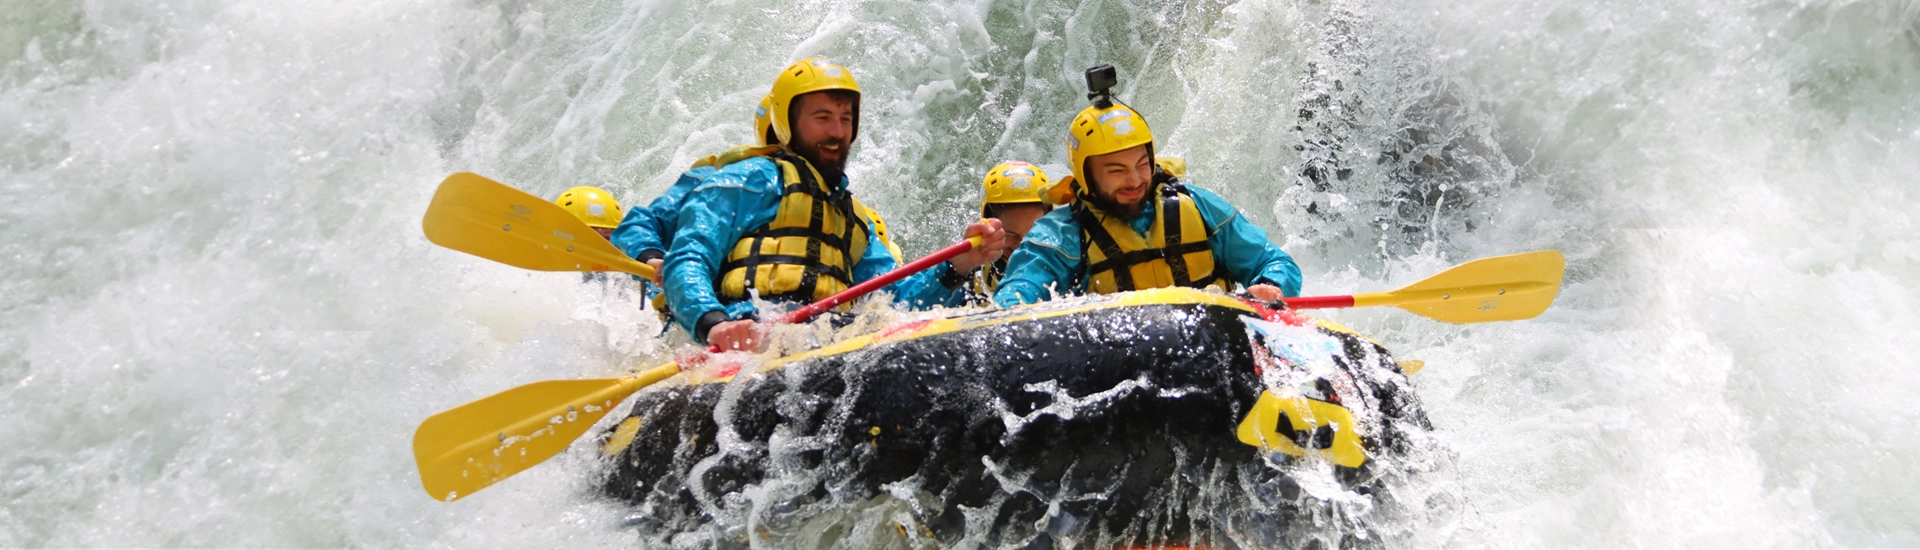 Gruppo di avventurieri in azione durante un'escursione di rafting di classe 4 sul fiume Marmore in Umbria, circondati da una rigogliosa vegetazione tropicale, con felci, piante e rivoli d'acqua che adornano il percorso fluviale.